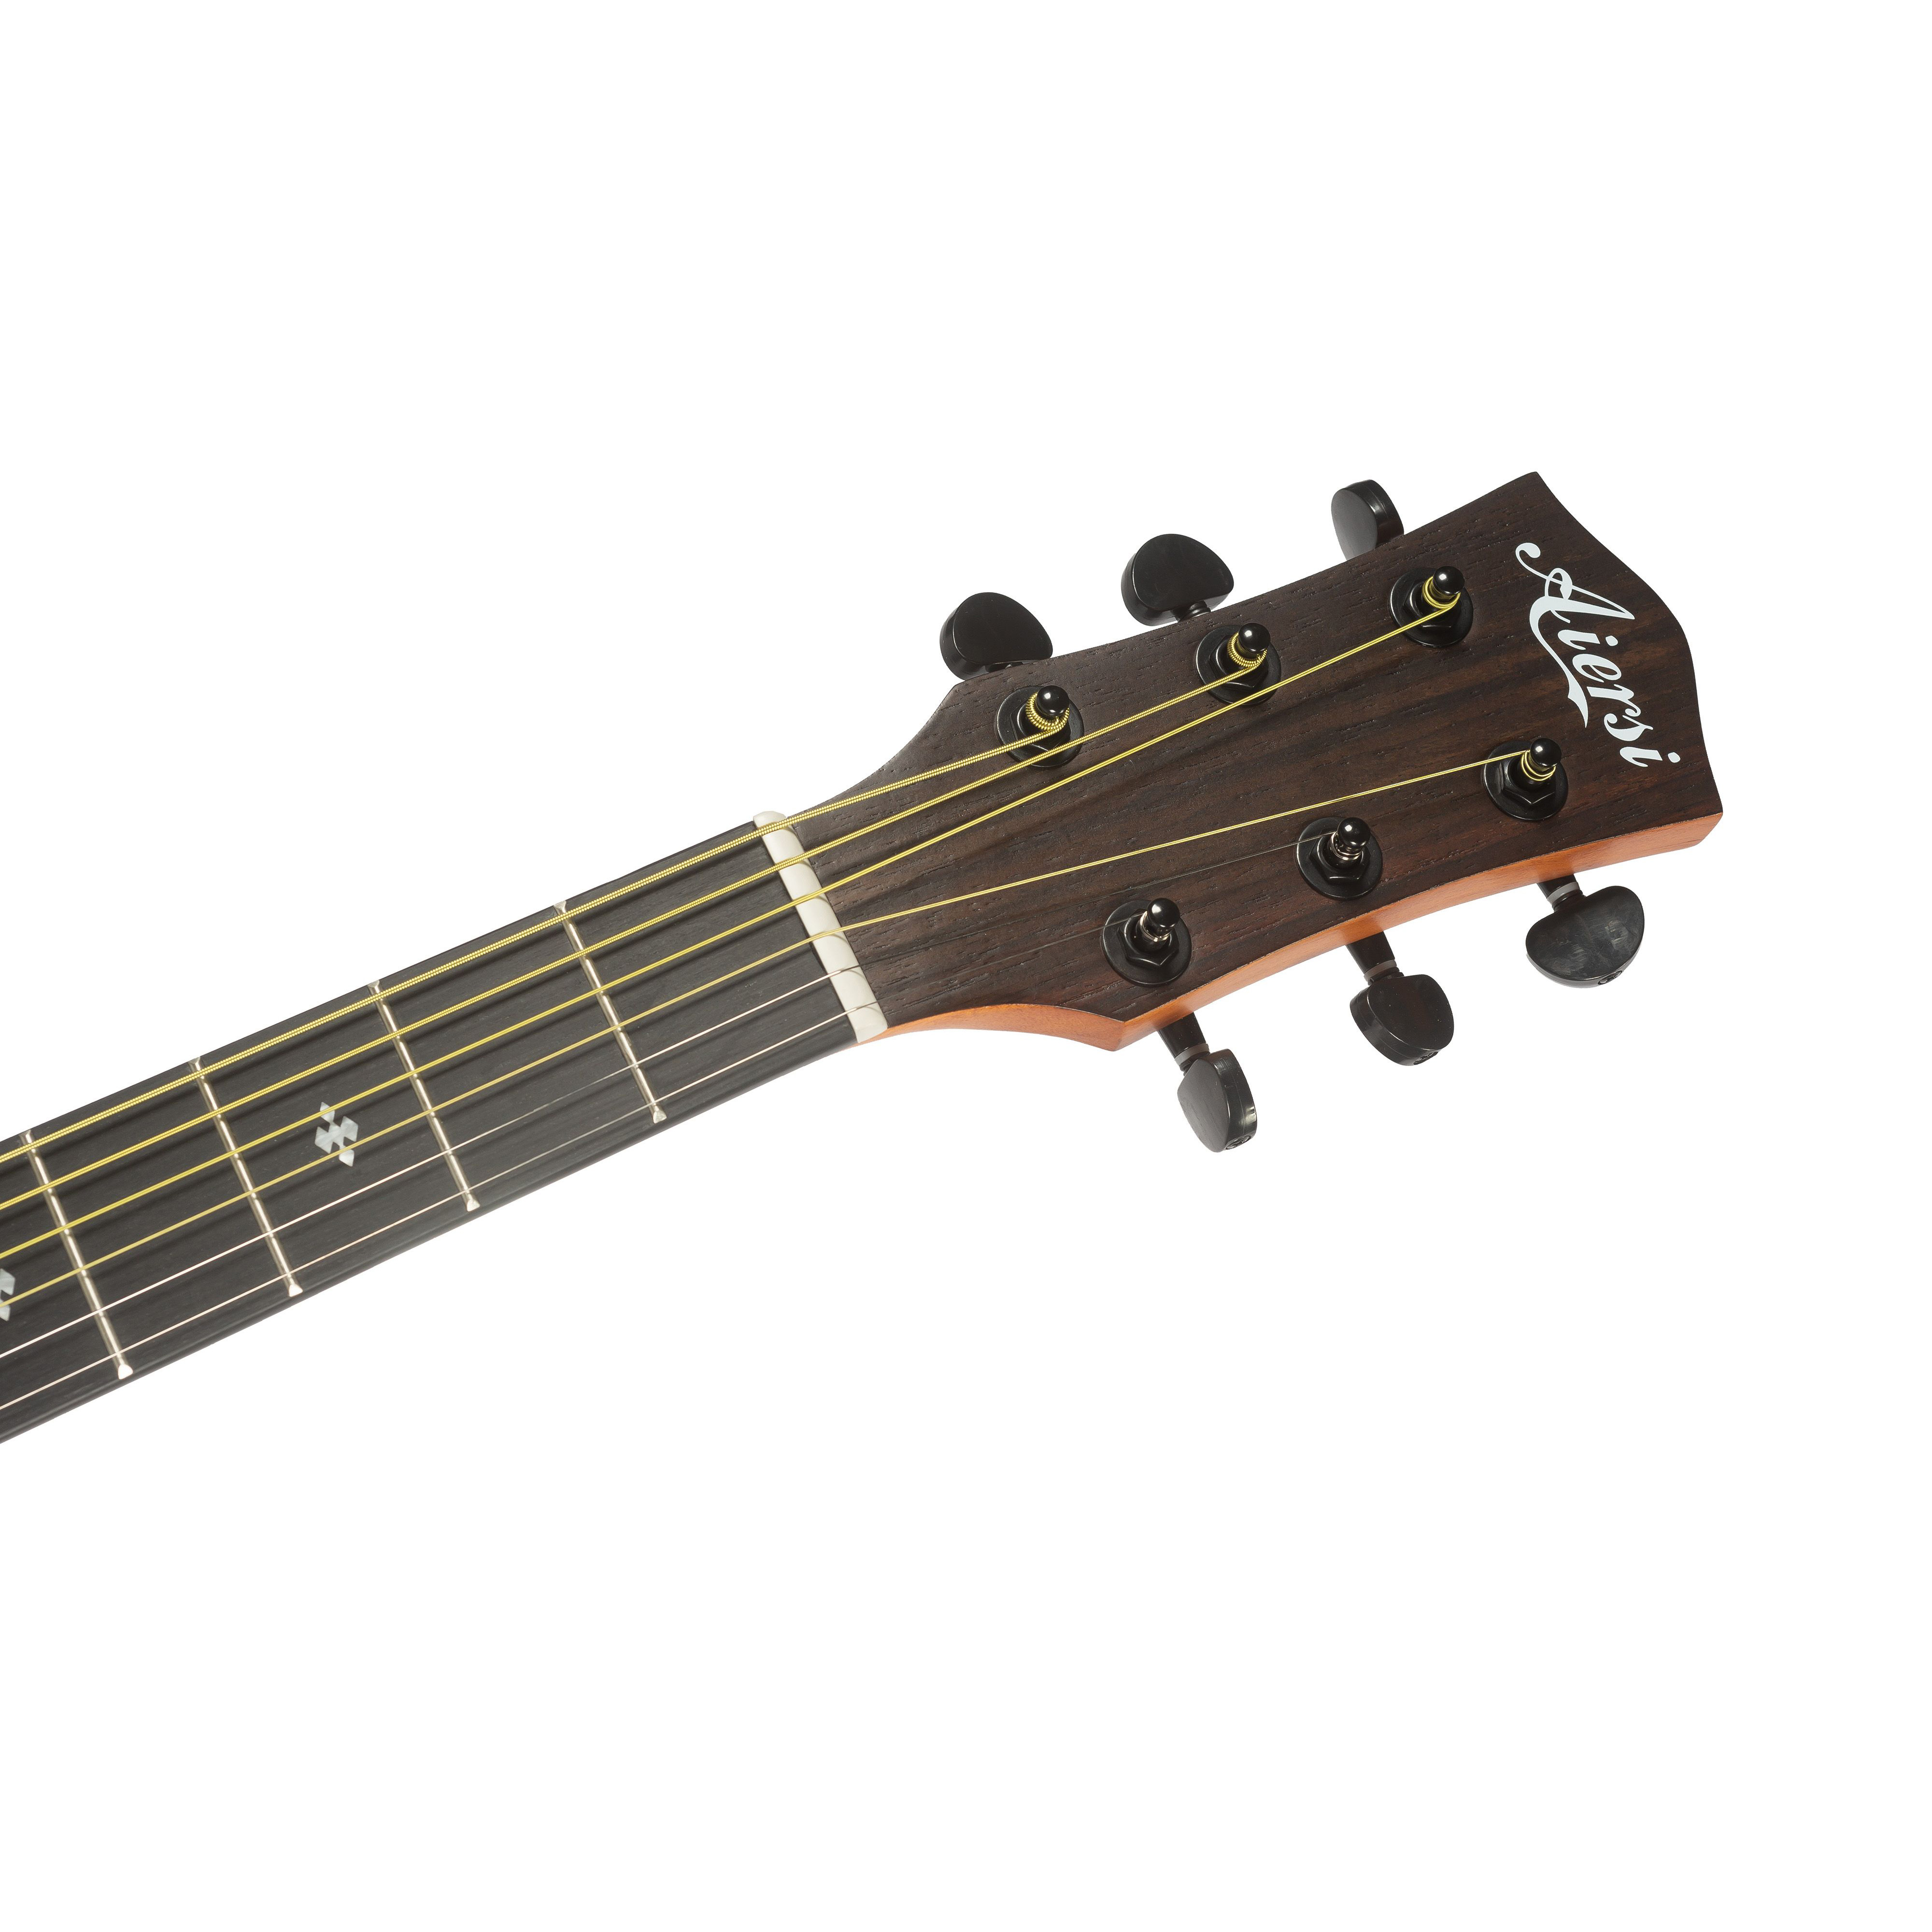 Aiersi SG02SM-40 Акустические гитары